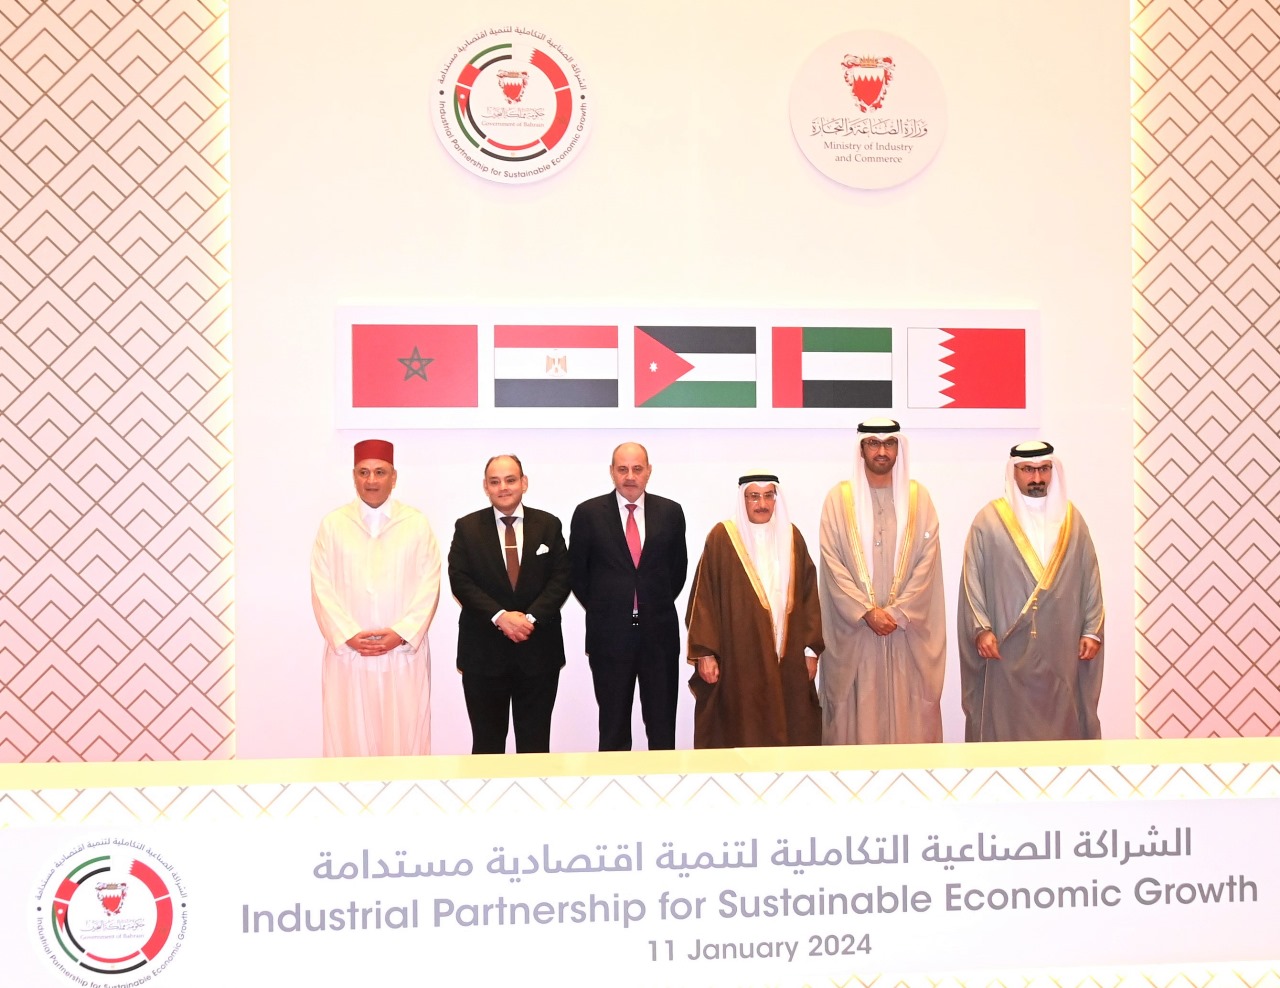 Le Maroc rejoint une coalition économique durable avec les Émirats arabes unis, la Jordanie, l'Égypte et le Bahreïn